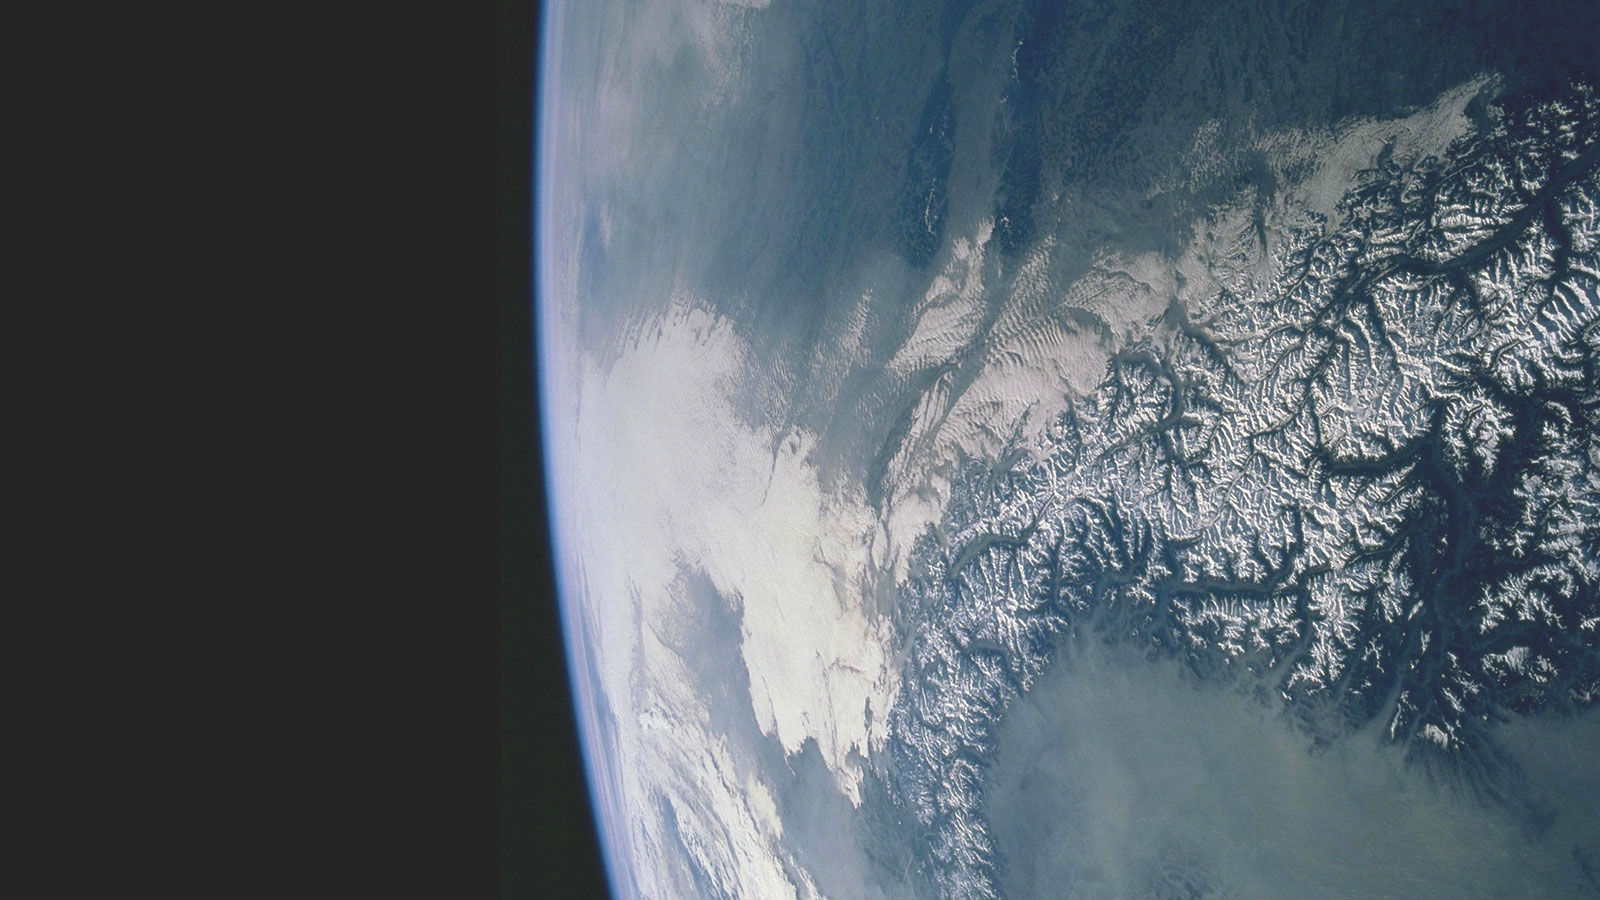 Die Erde im Blick. Satelliten liefern viele wichtige Informationen über unseren Planeten. Bild: DLR, Eumetsat